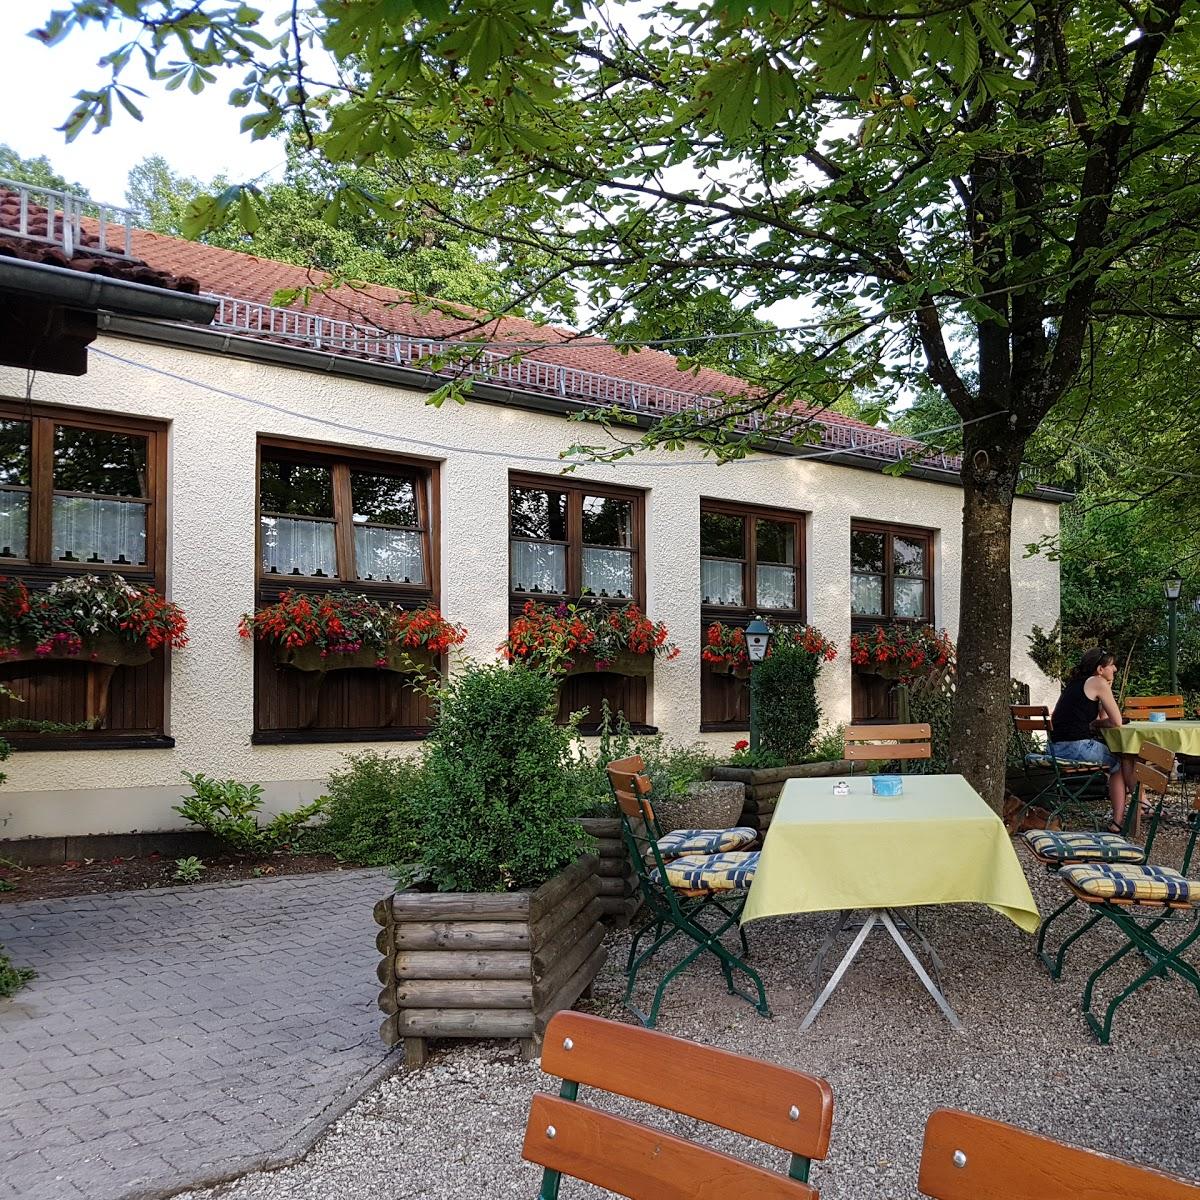 Restaurant "Deutschmeister" in Donauwörth